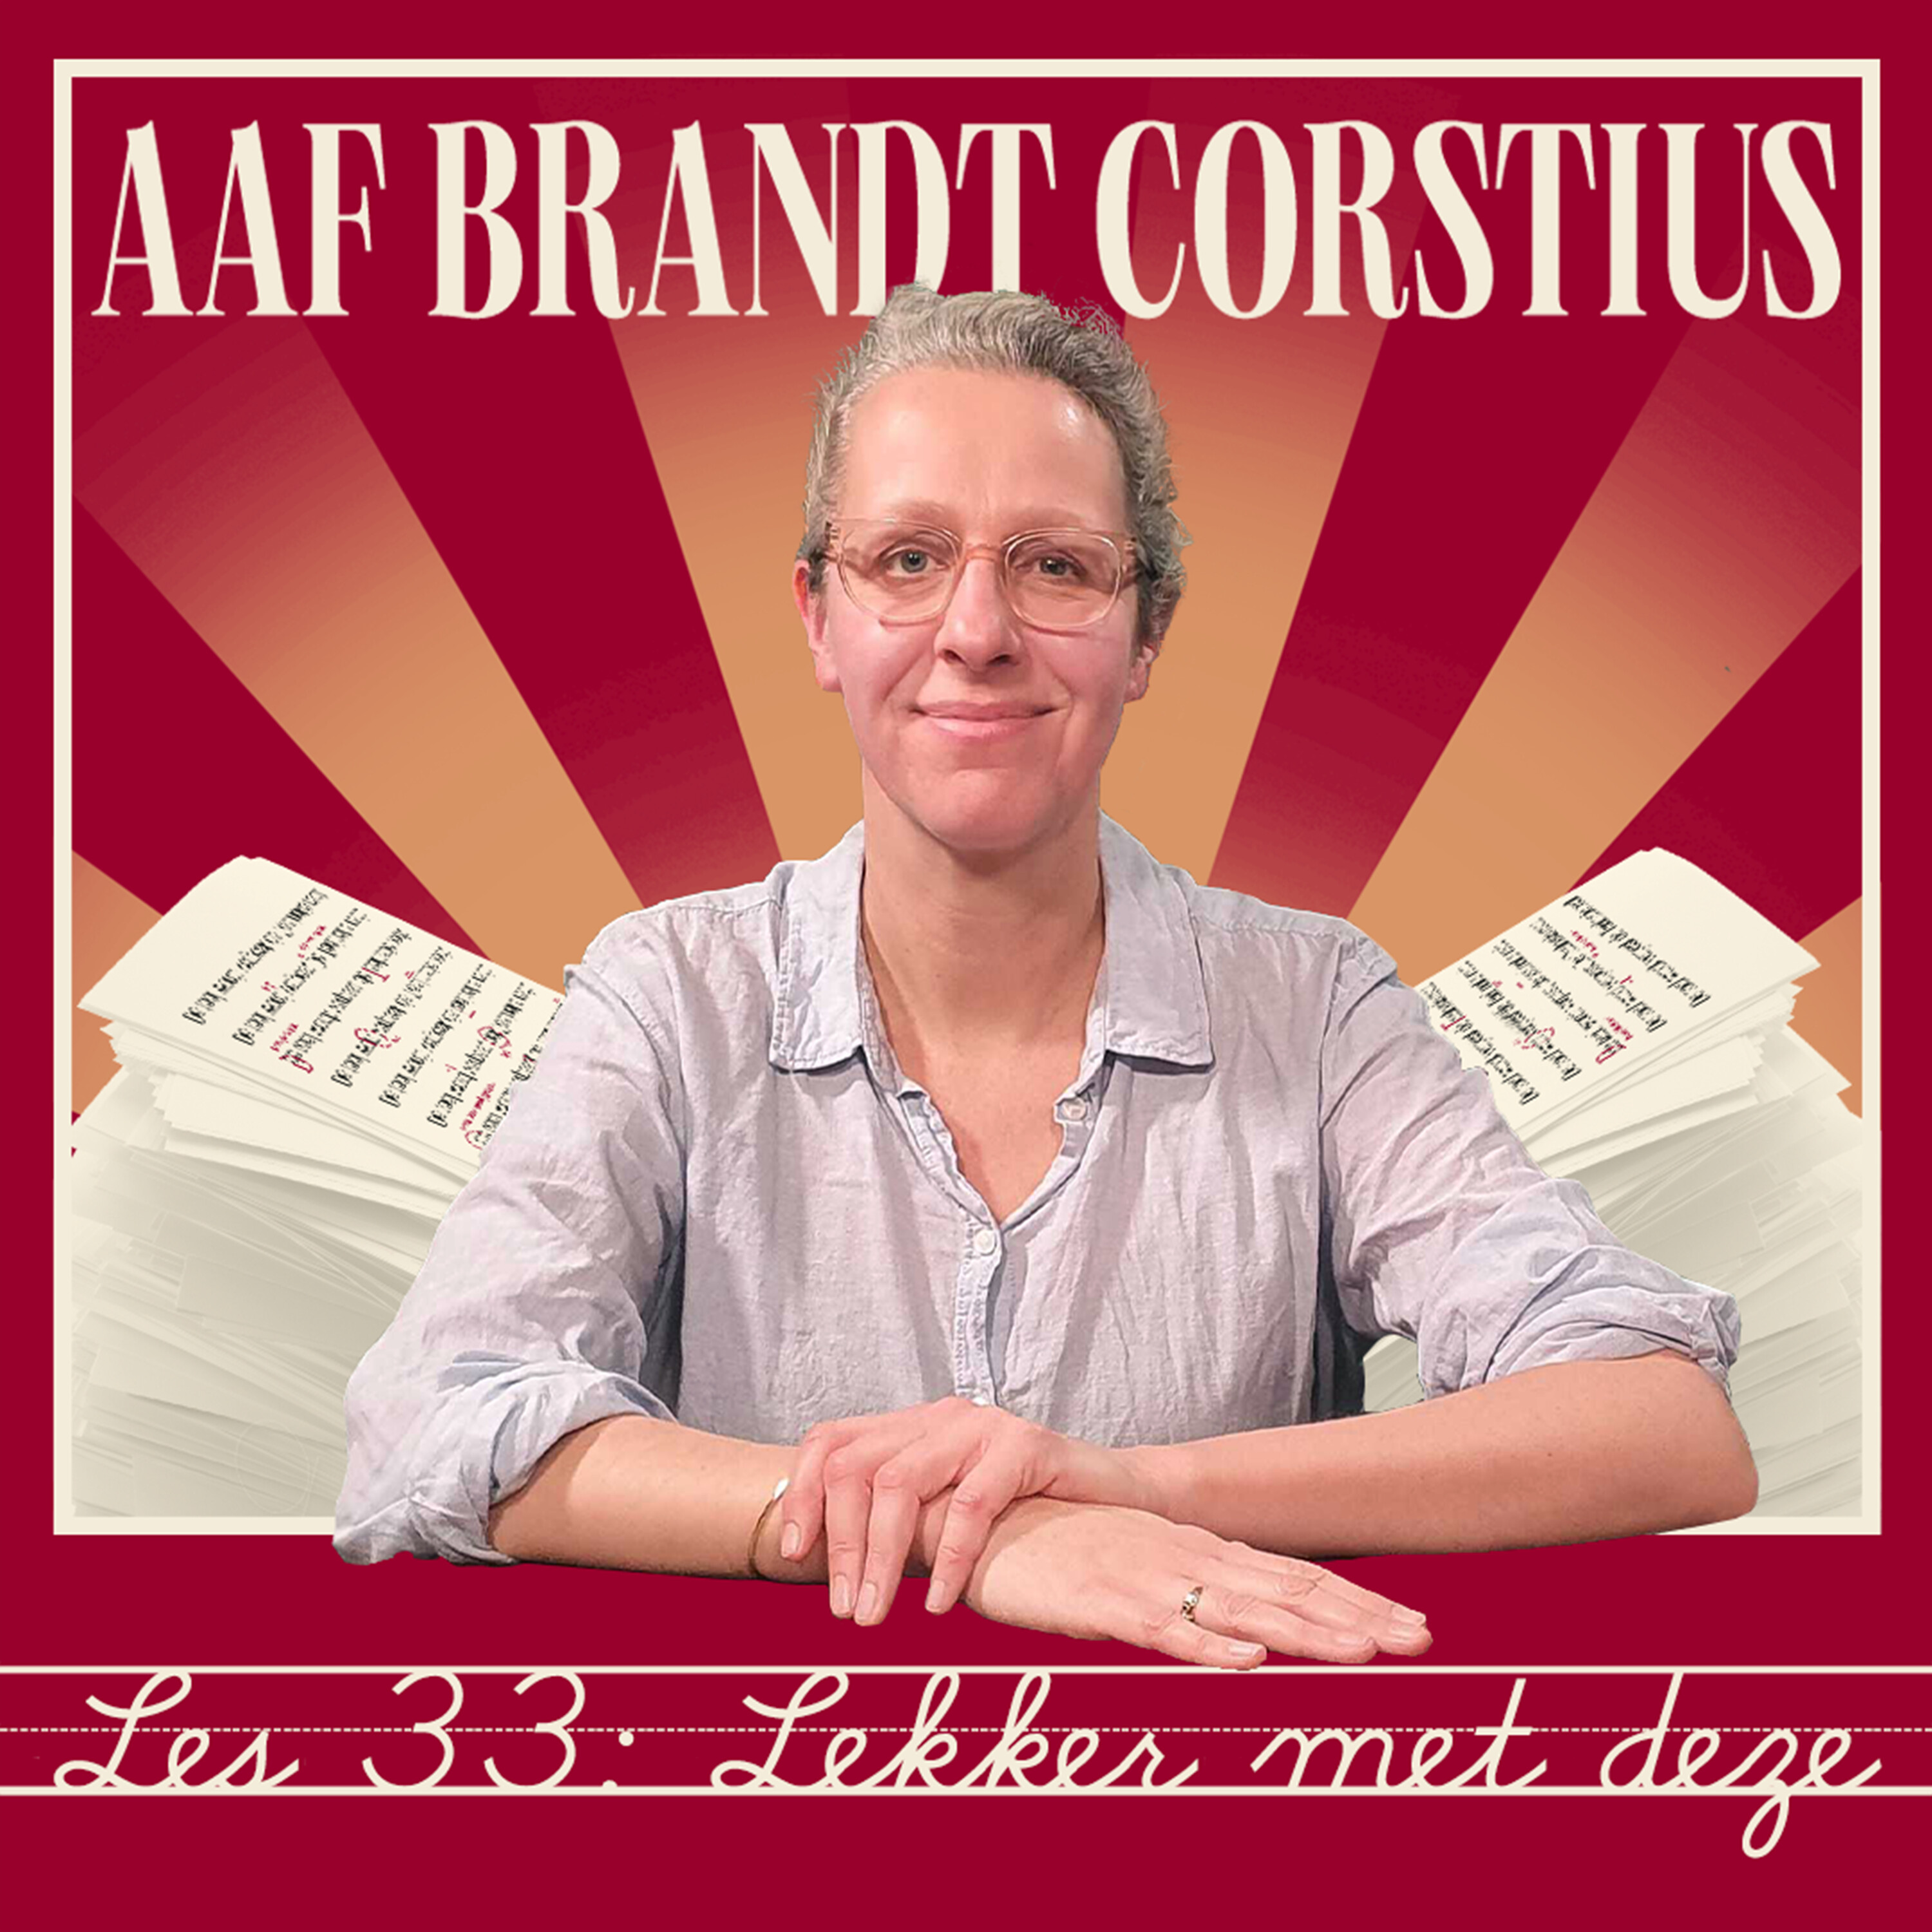 Juffrouw Aaf (Brandt Corstius) - Lekker met deze